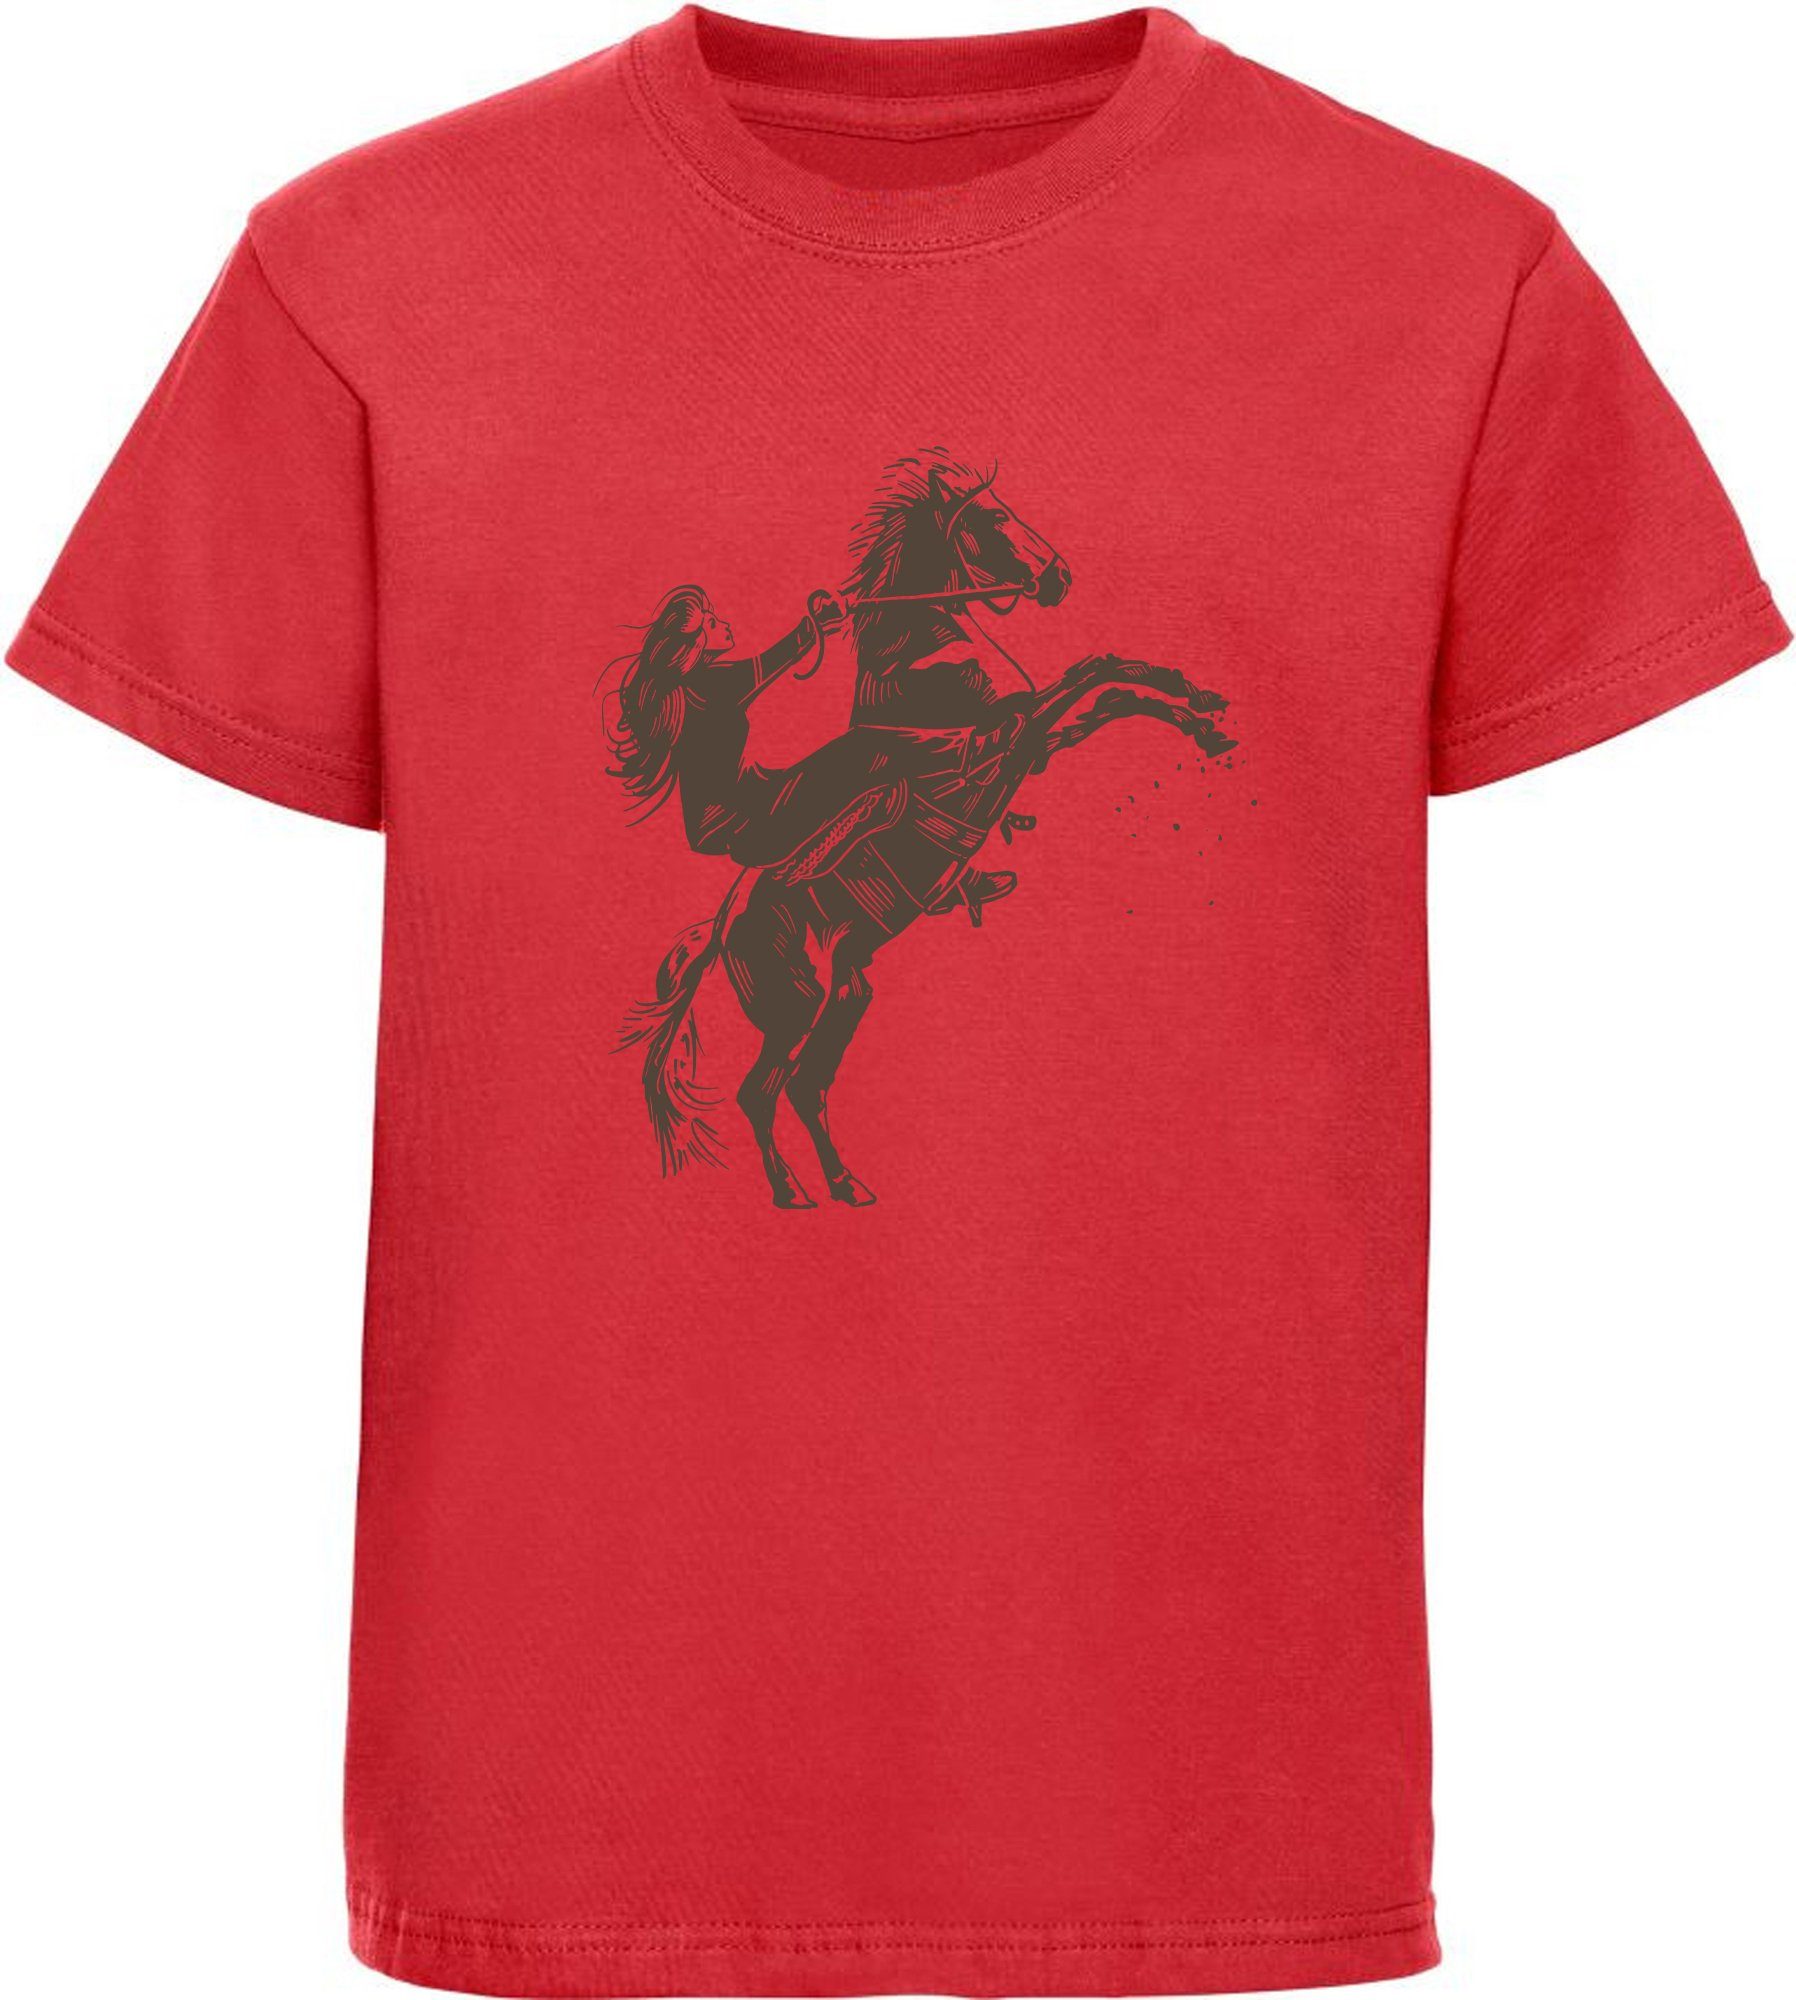 Aufdruck, mit Aufsteigendes MyDesign24 - Pferd Baumwollshirt mit i252 Reiter Kinder Shirt T-Shirt rot Pferde bedruckt Print